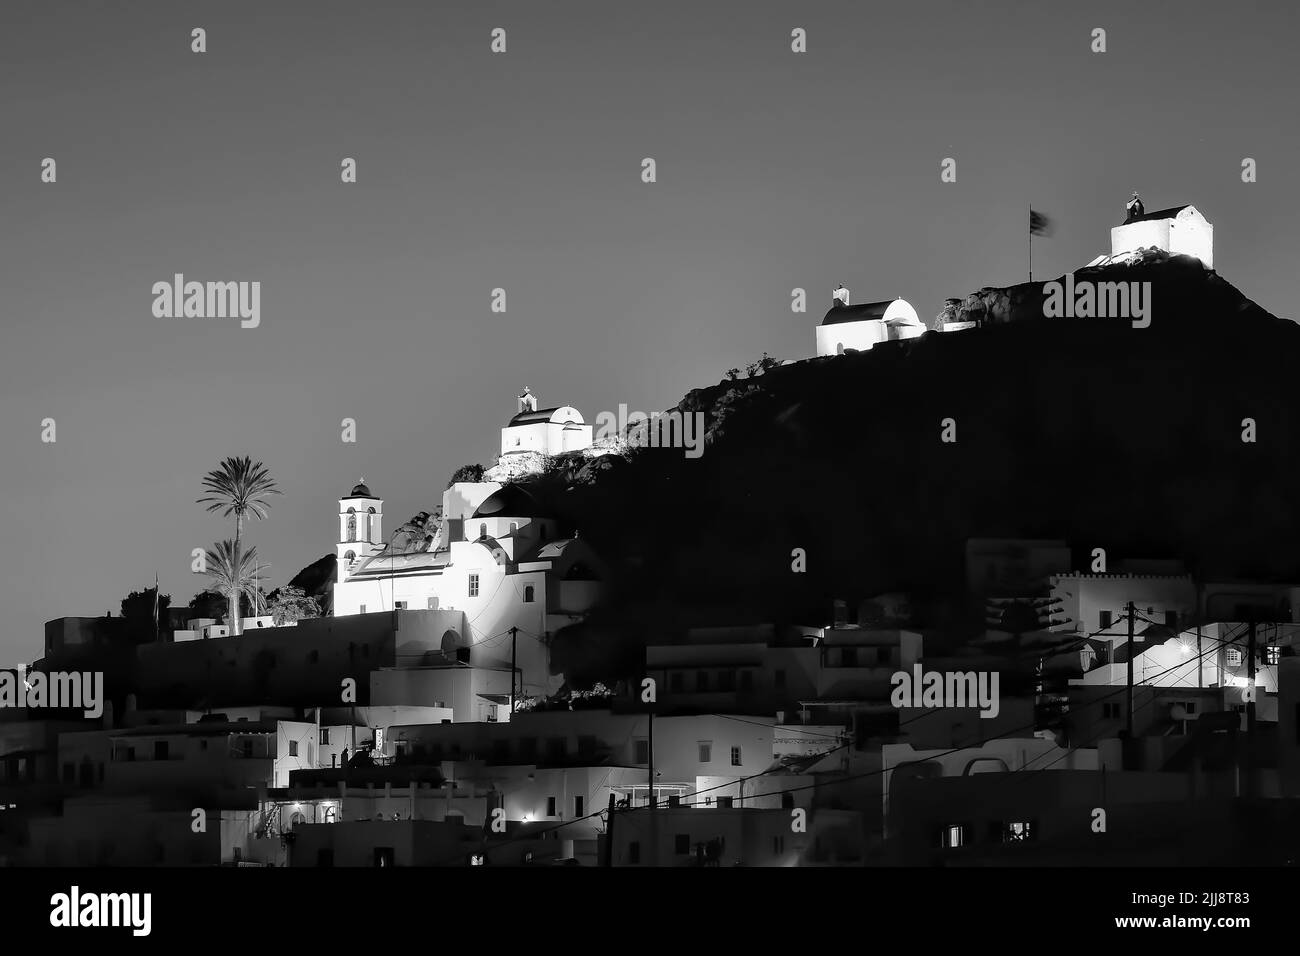 Vue panoramique sur l'île pittoresque illuminée d'iOS en Grèce tandis que le soleil se couche en noir et blanc Banque D'Images